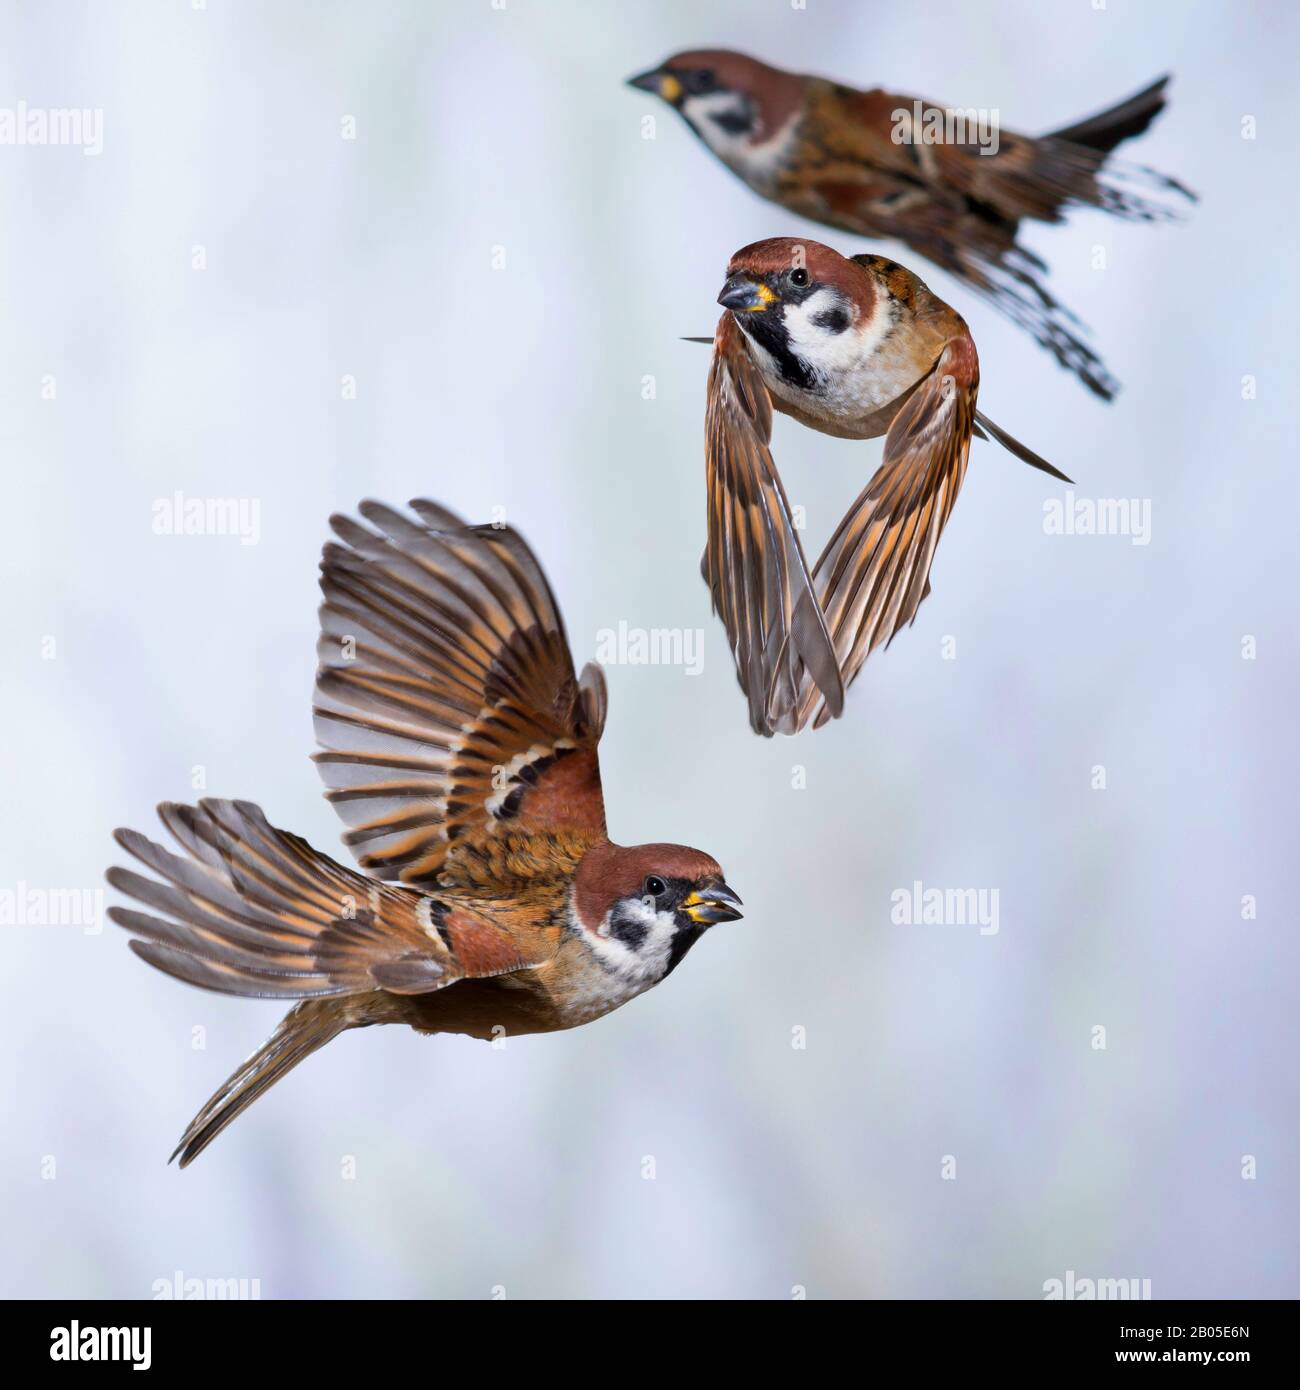 Sparrow d'arbre eurasien (Passer montanus), trois sparrows en vol, Allemagne Banque D'Images